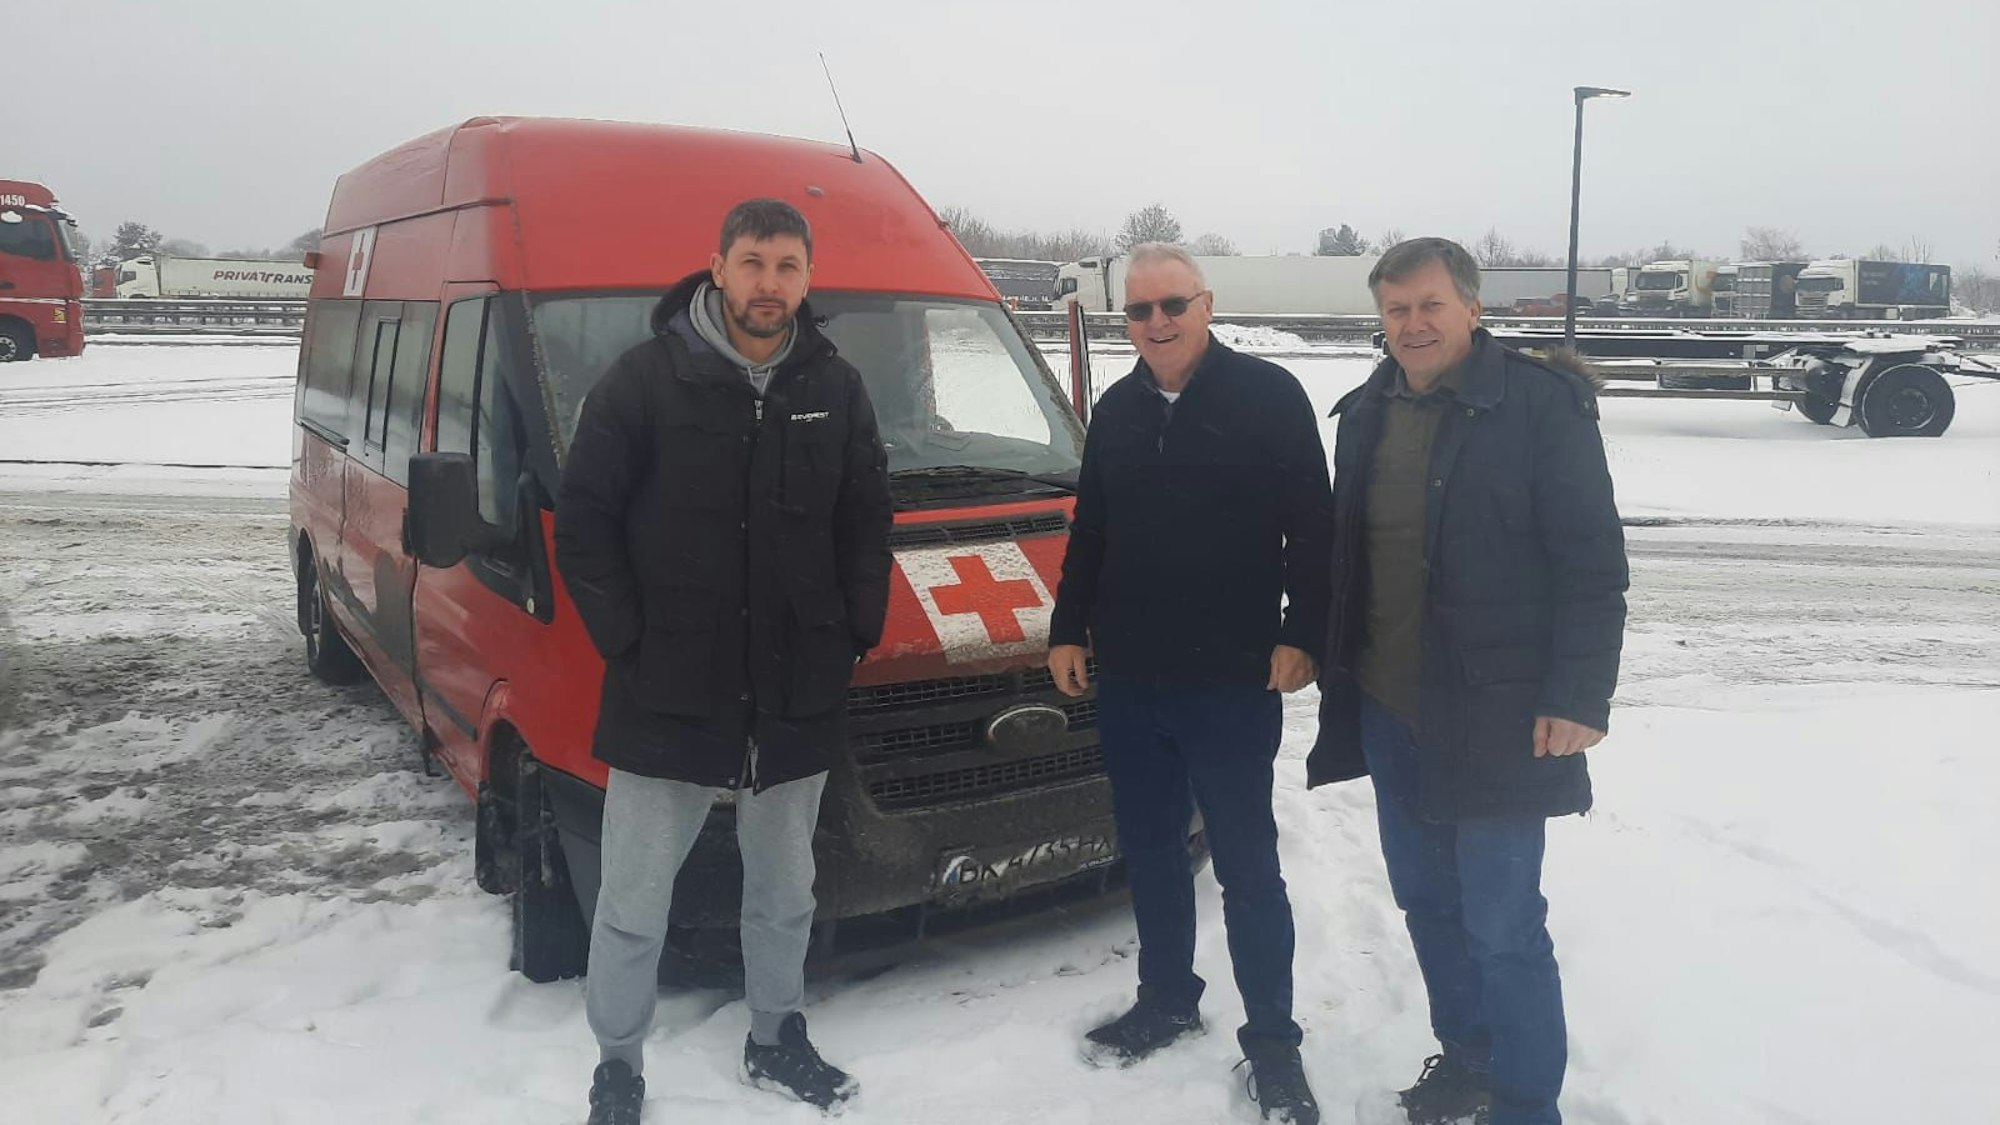 Drei Fahrer wechseln sich in der Ukraine ab. Hier stehen sie vor einem roten Lieferwagen mit Rotkreuz-Aufklebern.